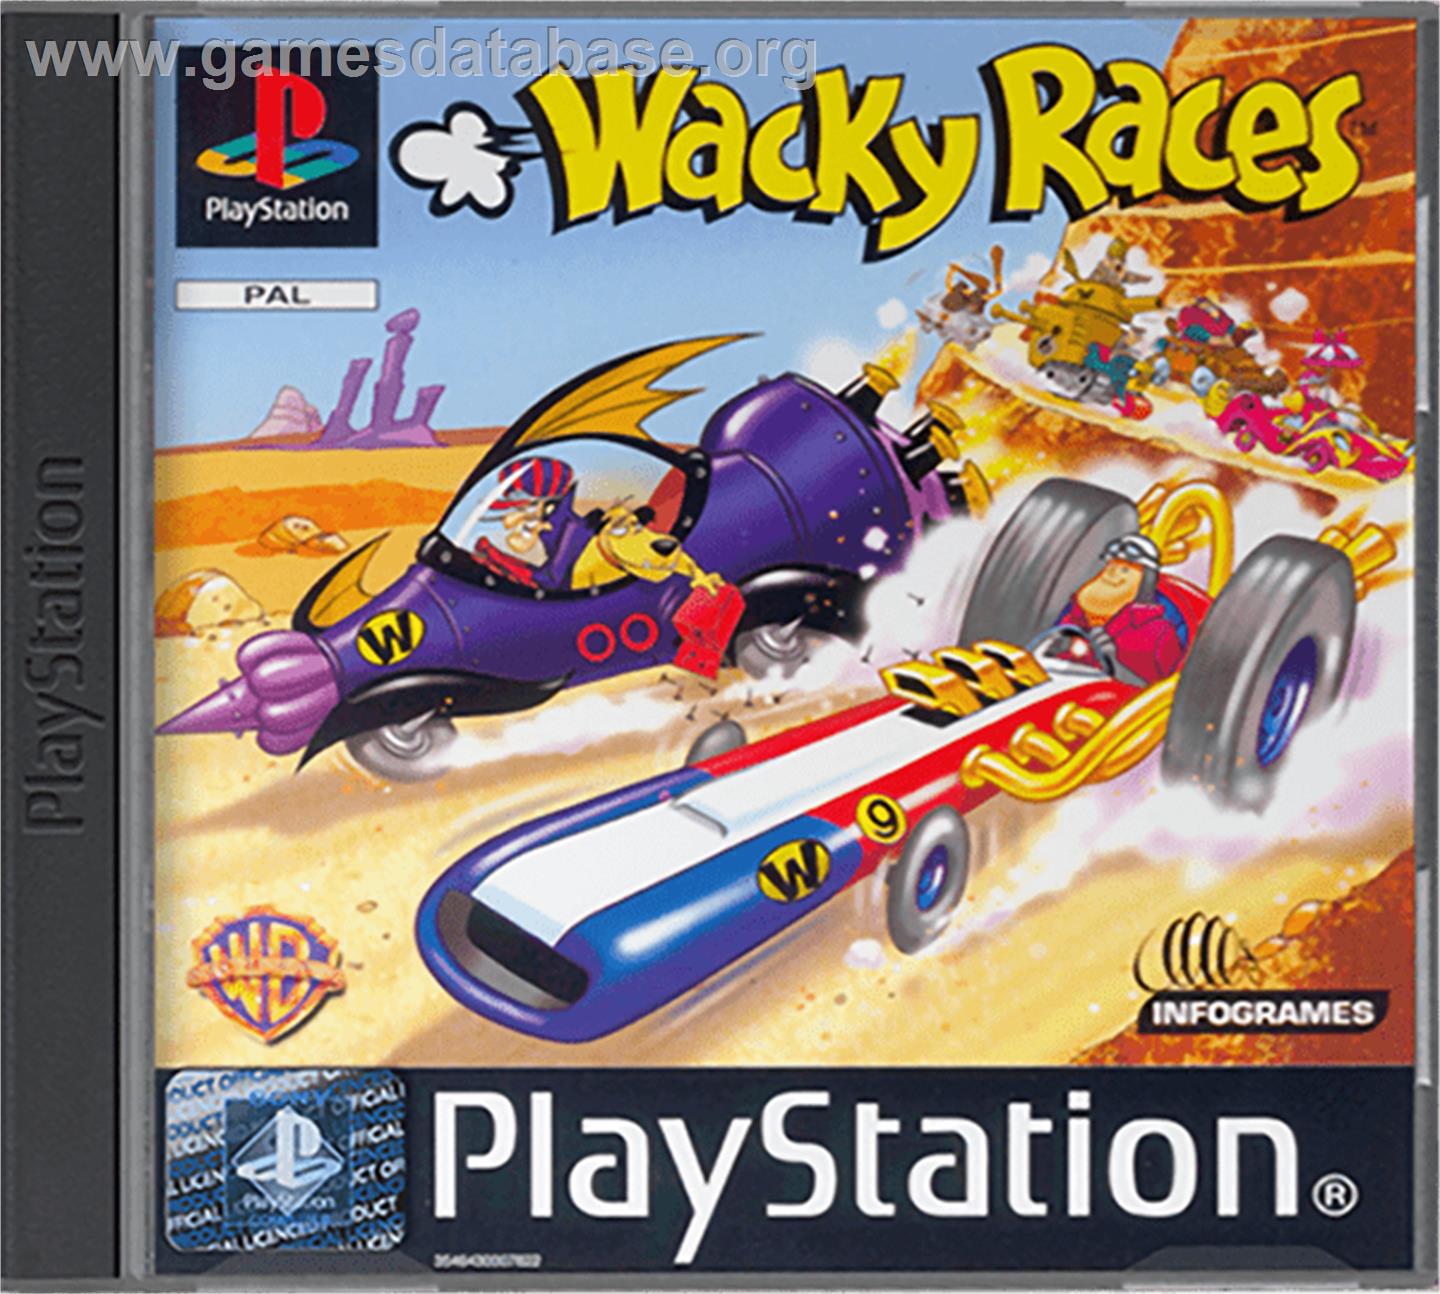 Wacky Races - Sony Playstation - Artwork - Box